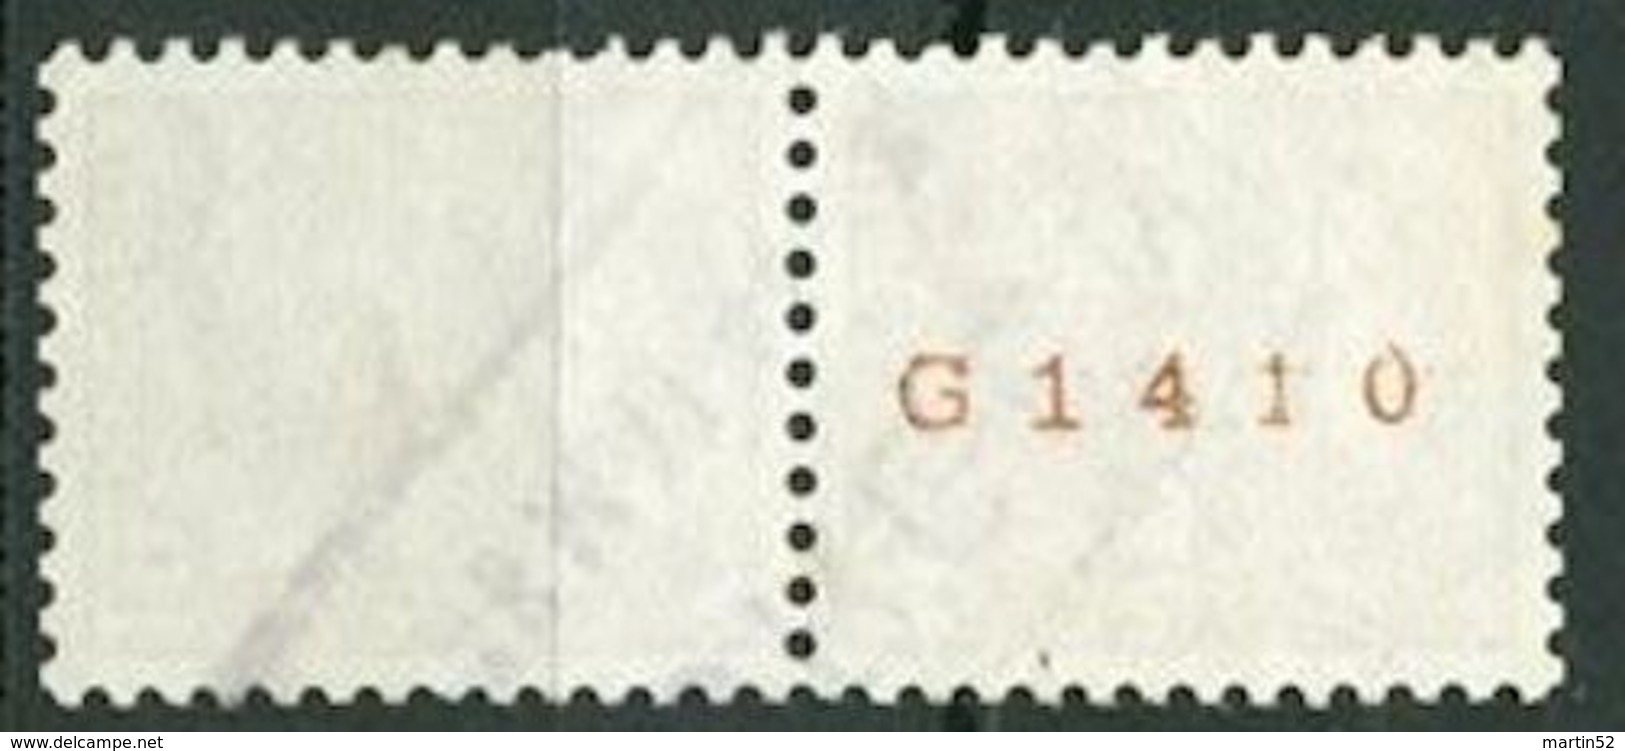 Schweiz Suisse 1942: Chillon Rolle Rouleaux Coil Zu 257RM.01 Mi 363bR (No. G1410) Mit O HORGEN 18 MAI 44 (Zu CHF 6.50) - Rollen